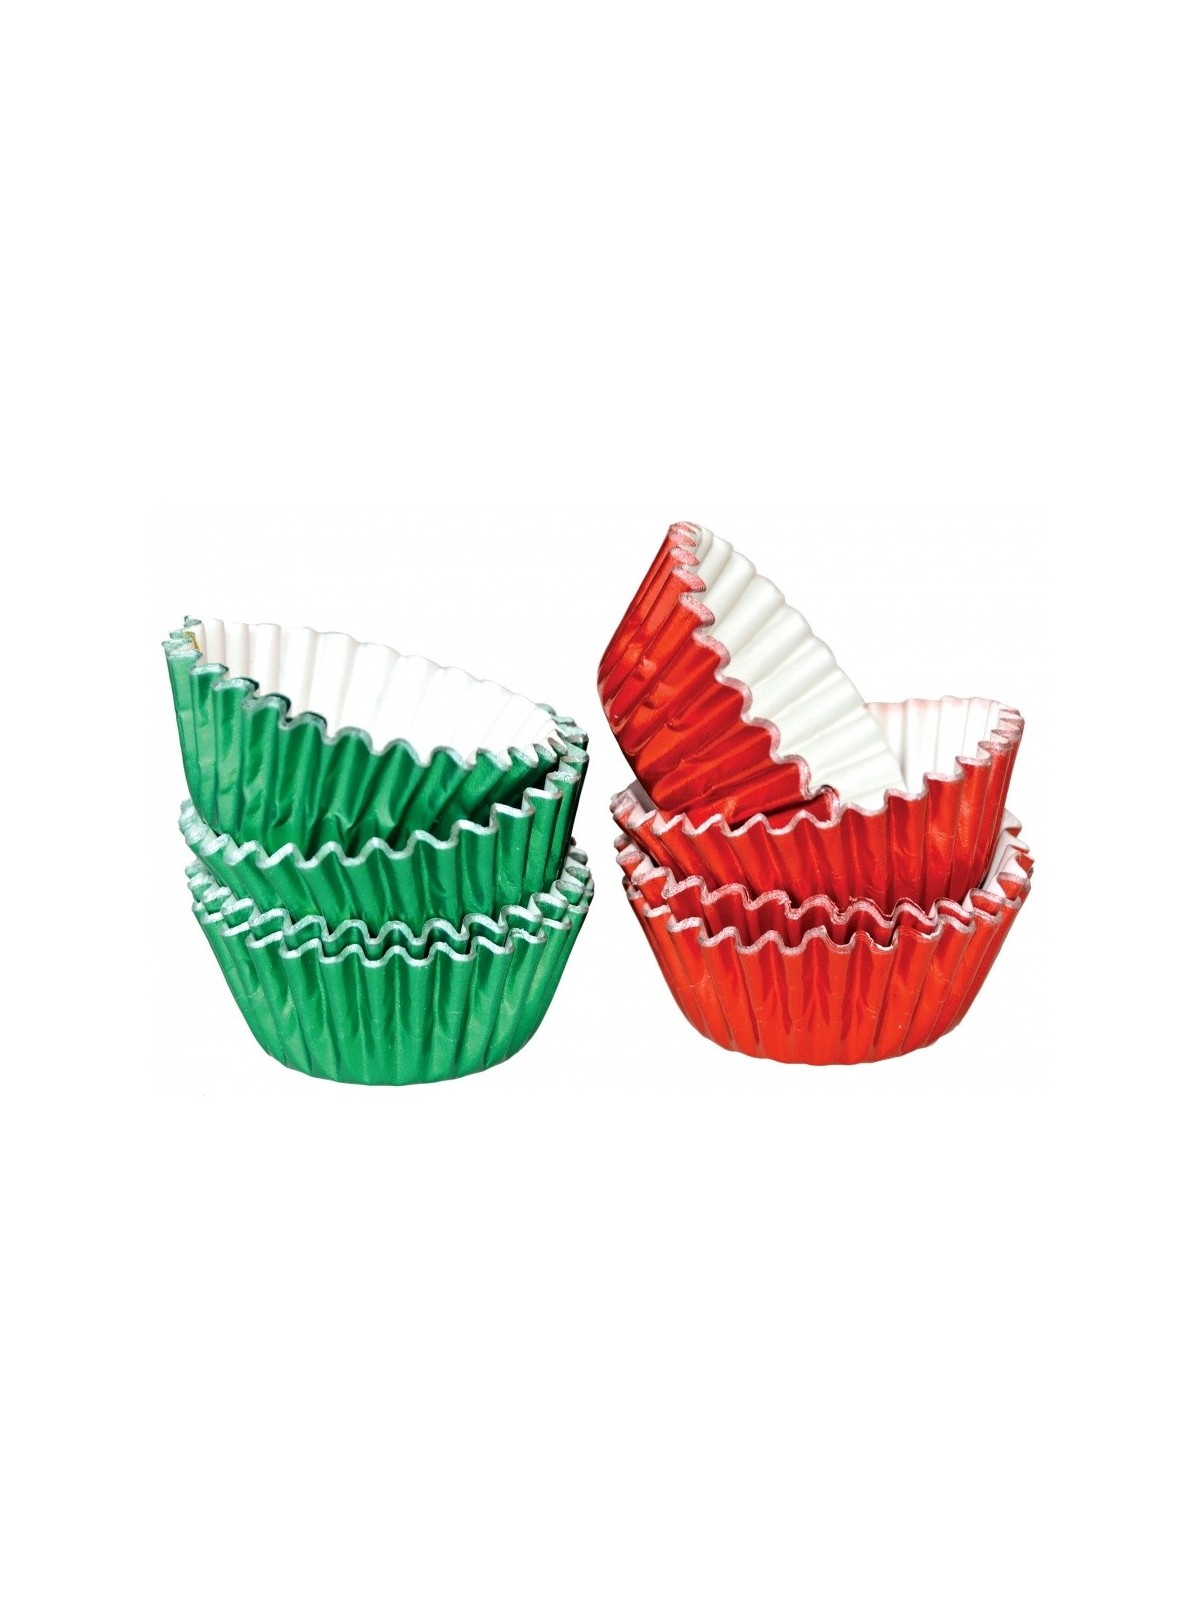 Hliníkové cukrářské MINI  košíčky 2,5 x 1,7cm - zelený / červený - 50ks